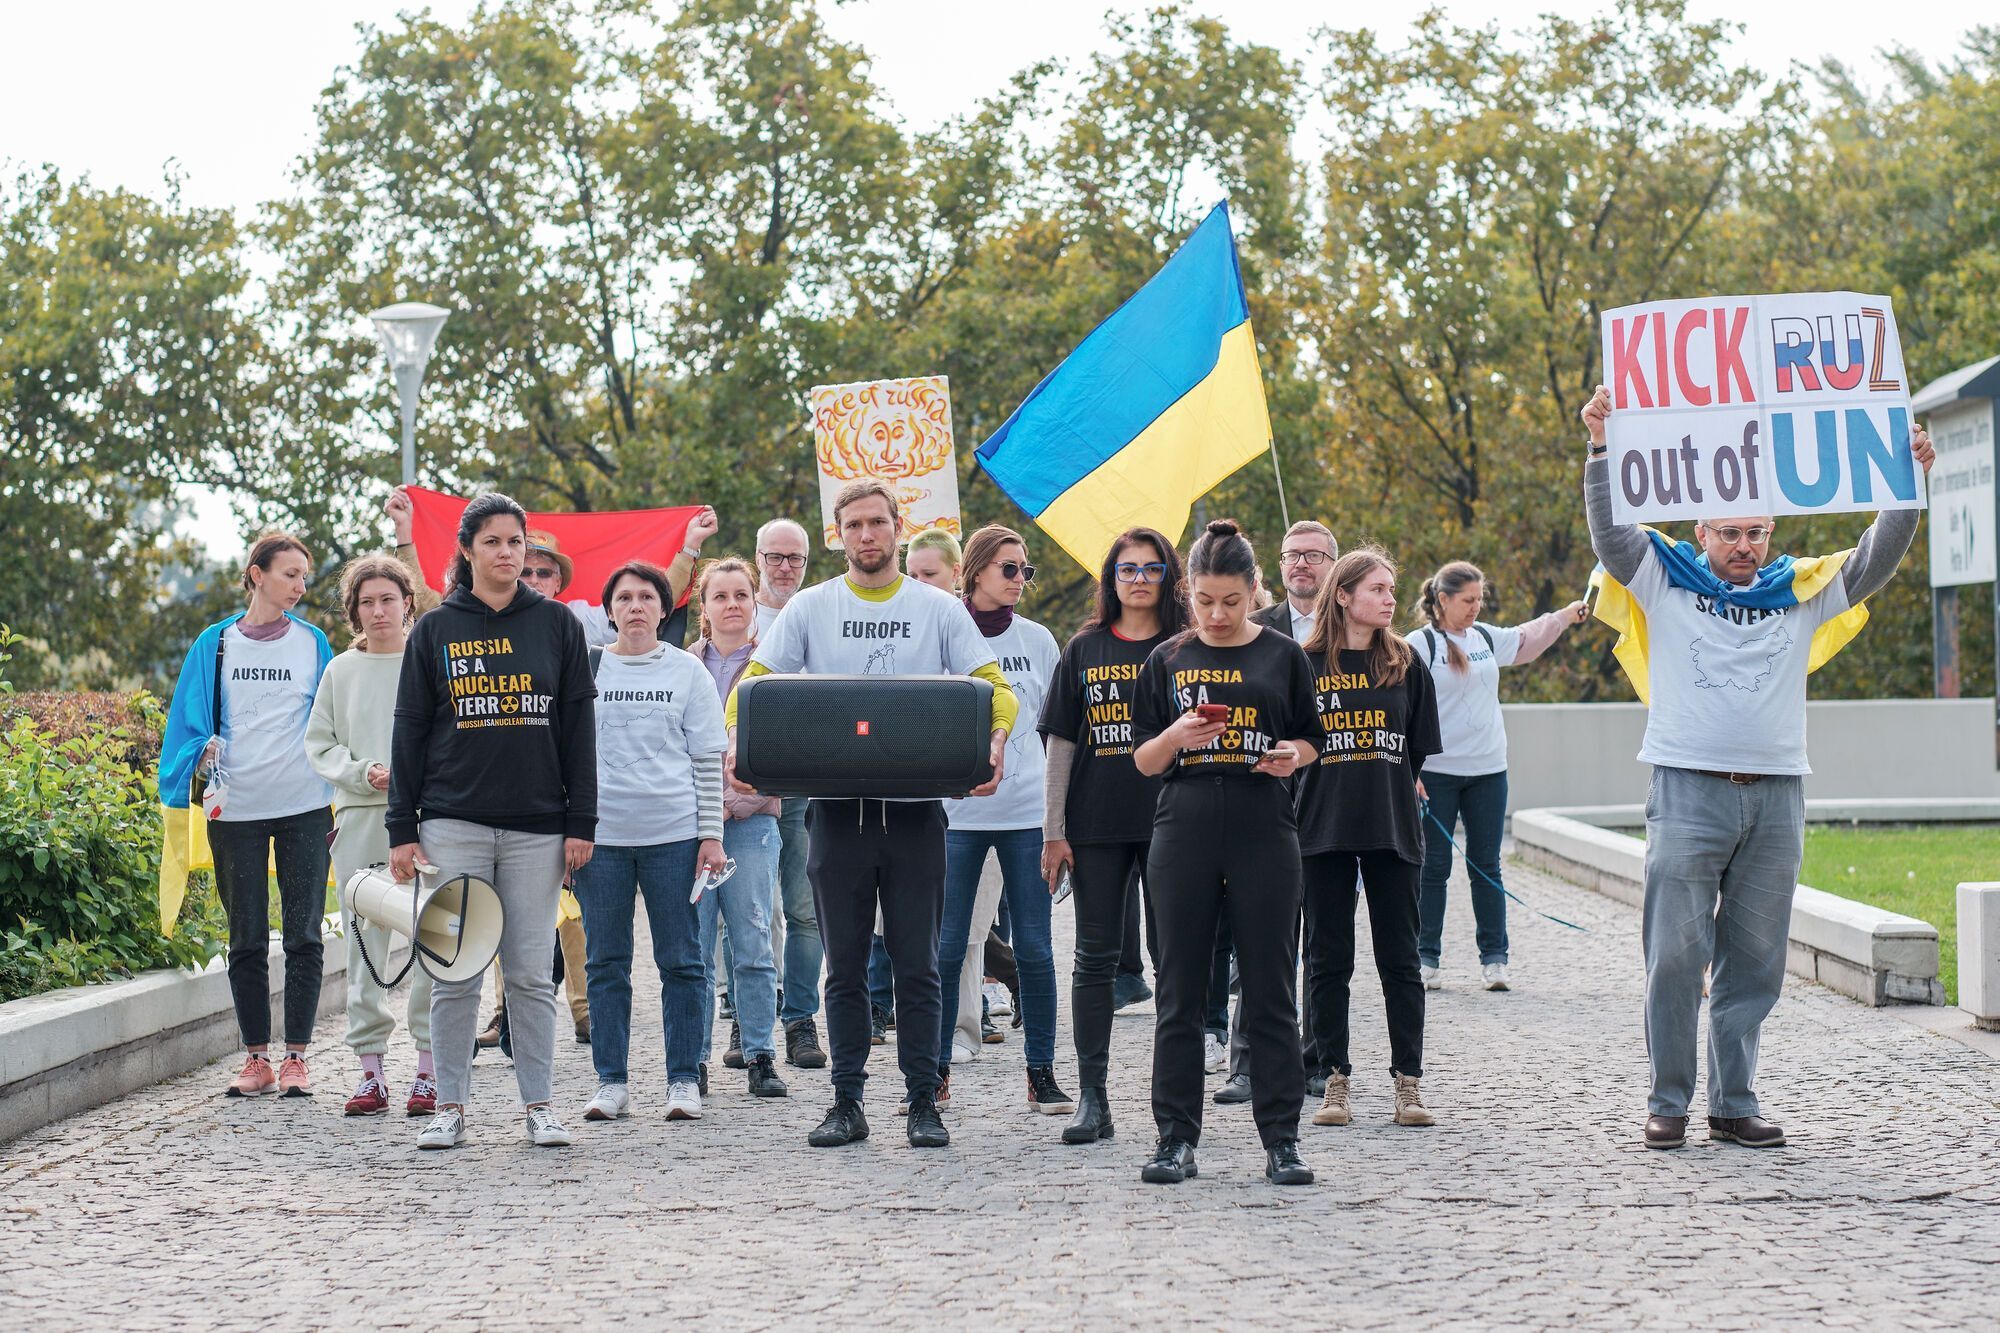 "Покрытые ядерным пеплом": в Вене участники акции против членства России в МАГАТЭ устроили жуткий перформанс. Фото